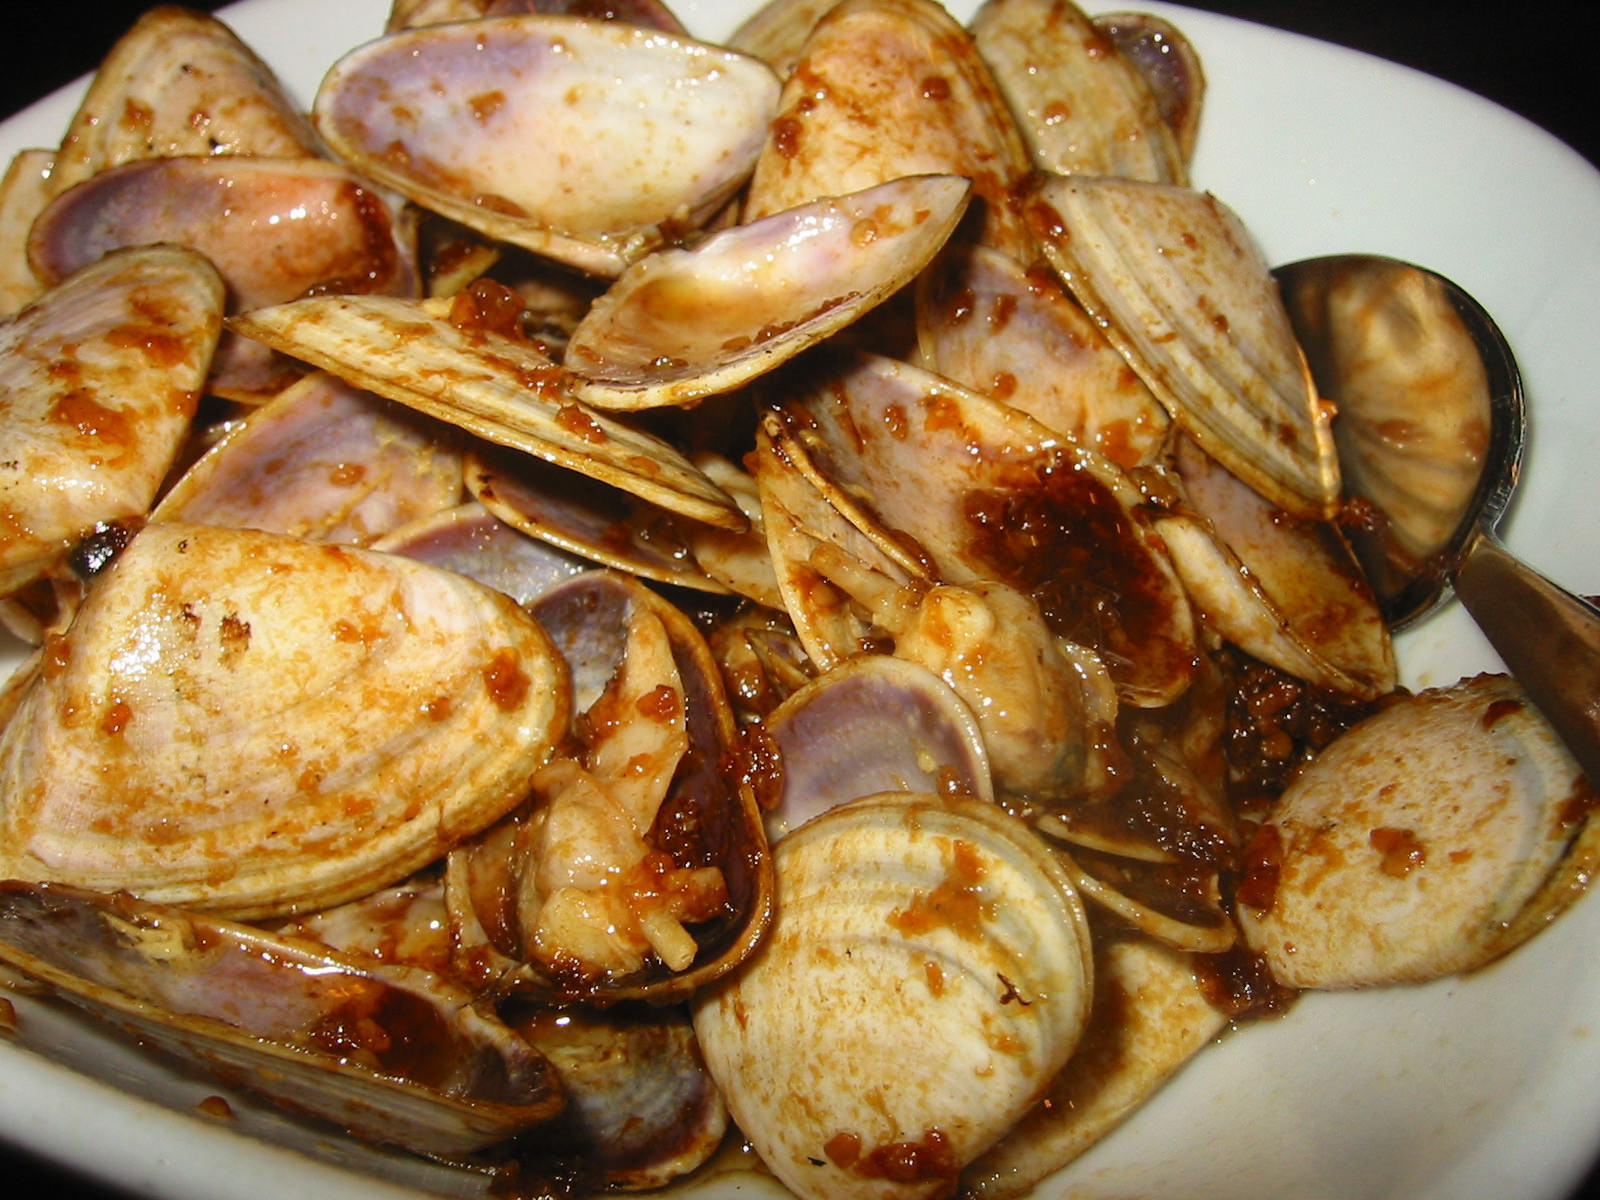 XO clams